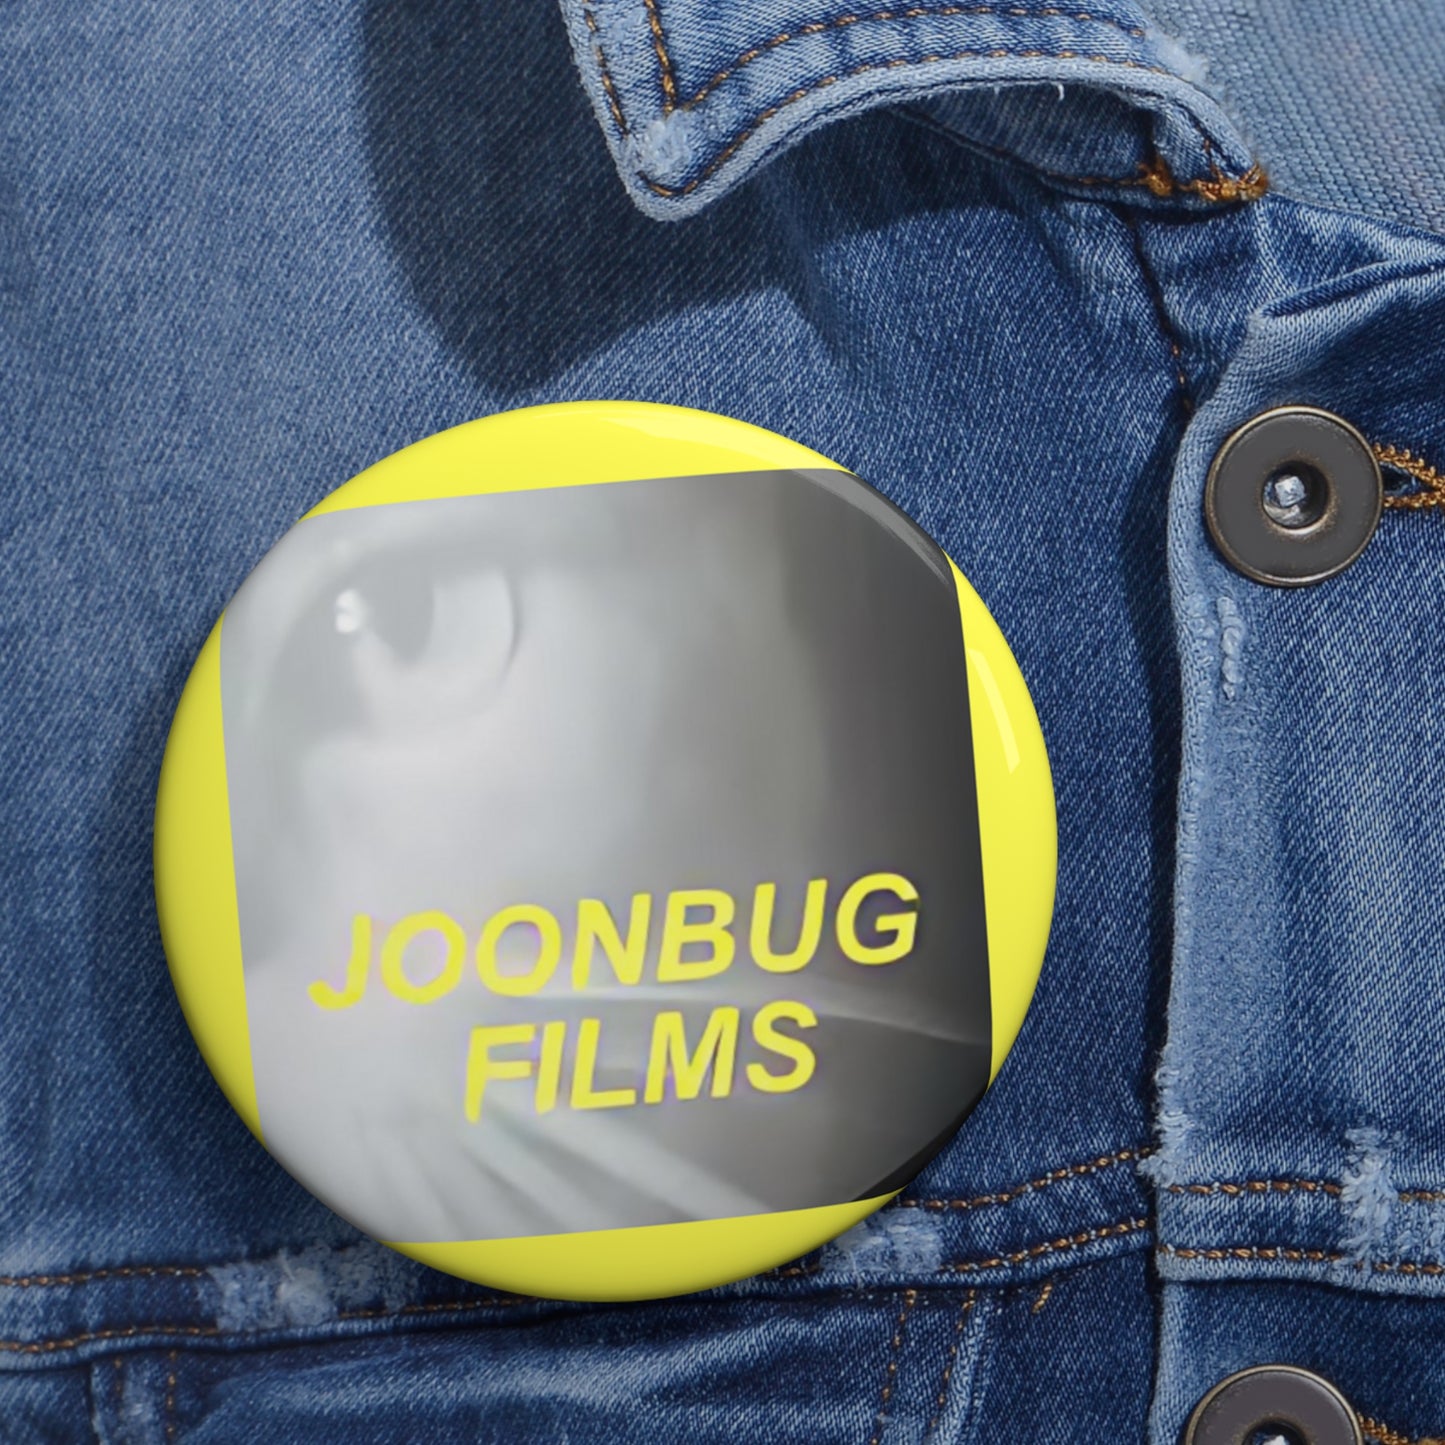 Joonbug Films Pin Buttons